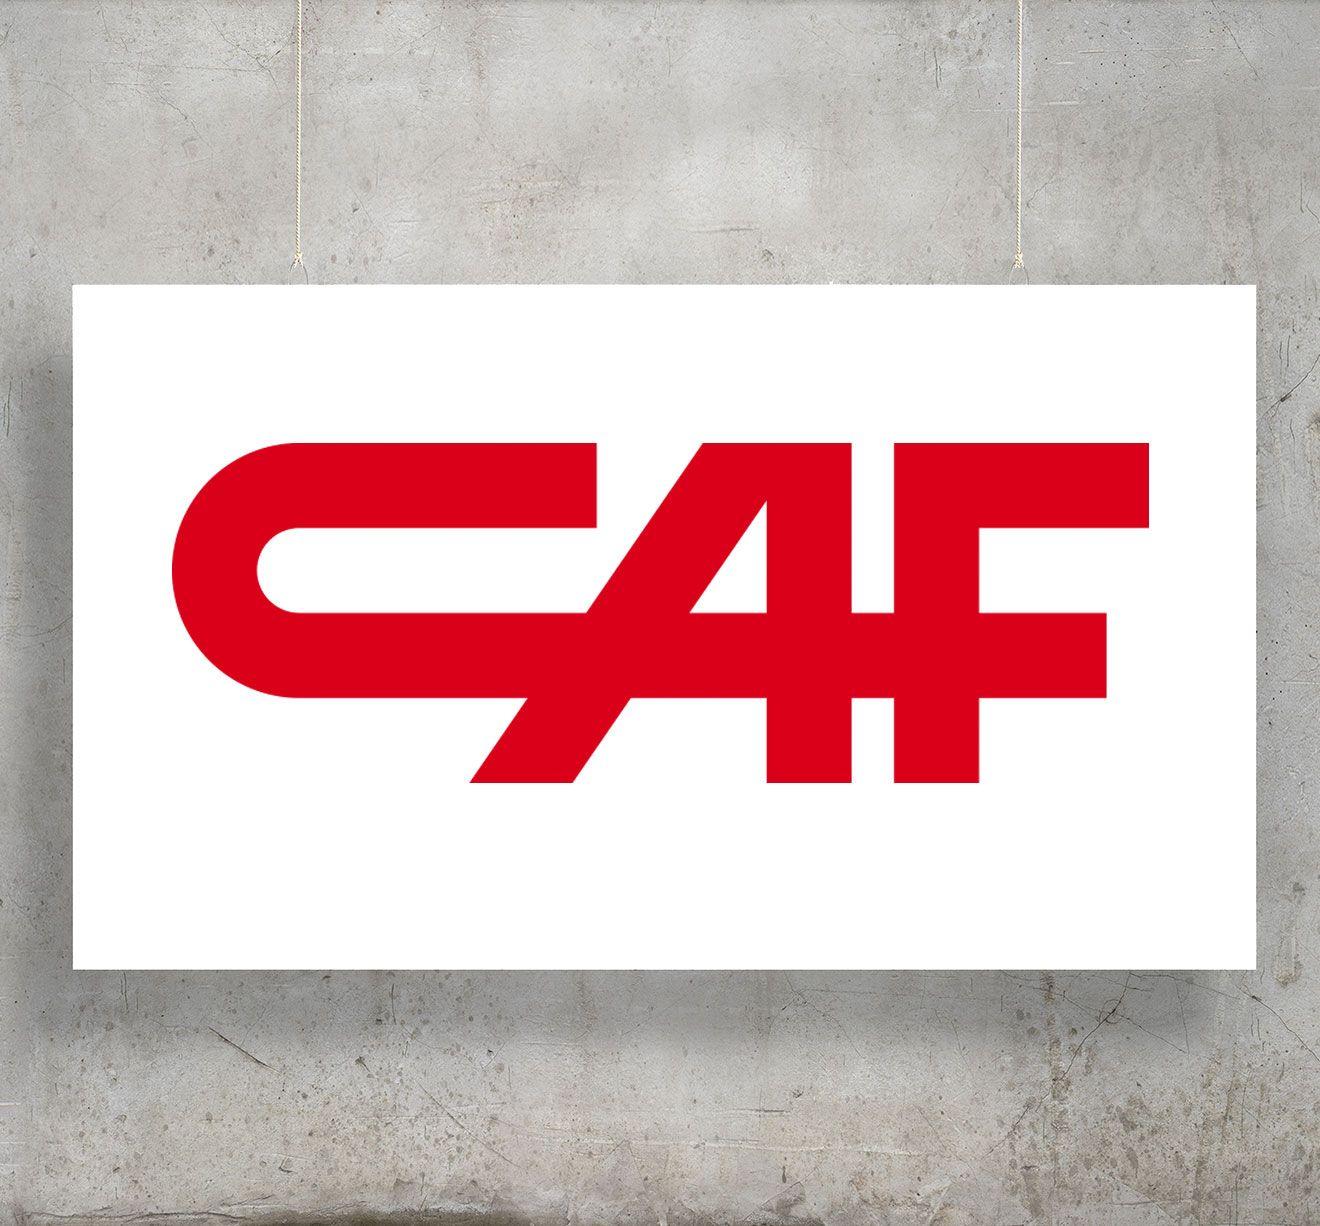 CAF Logo - Construcciones y Auxiliar de Ferrocarriles S.A. - Global Railway Review